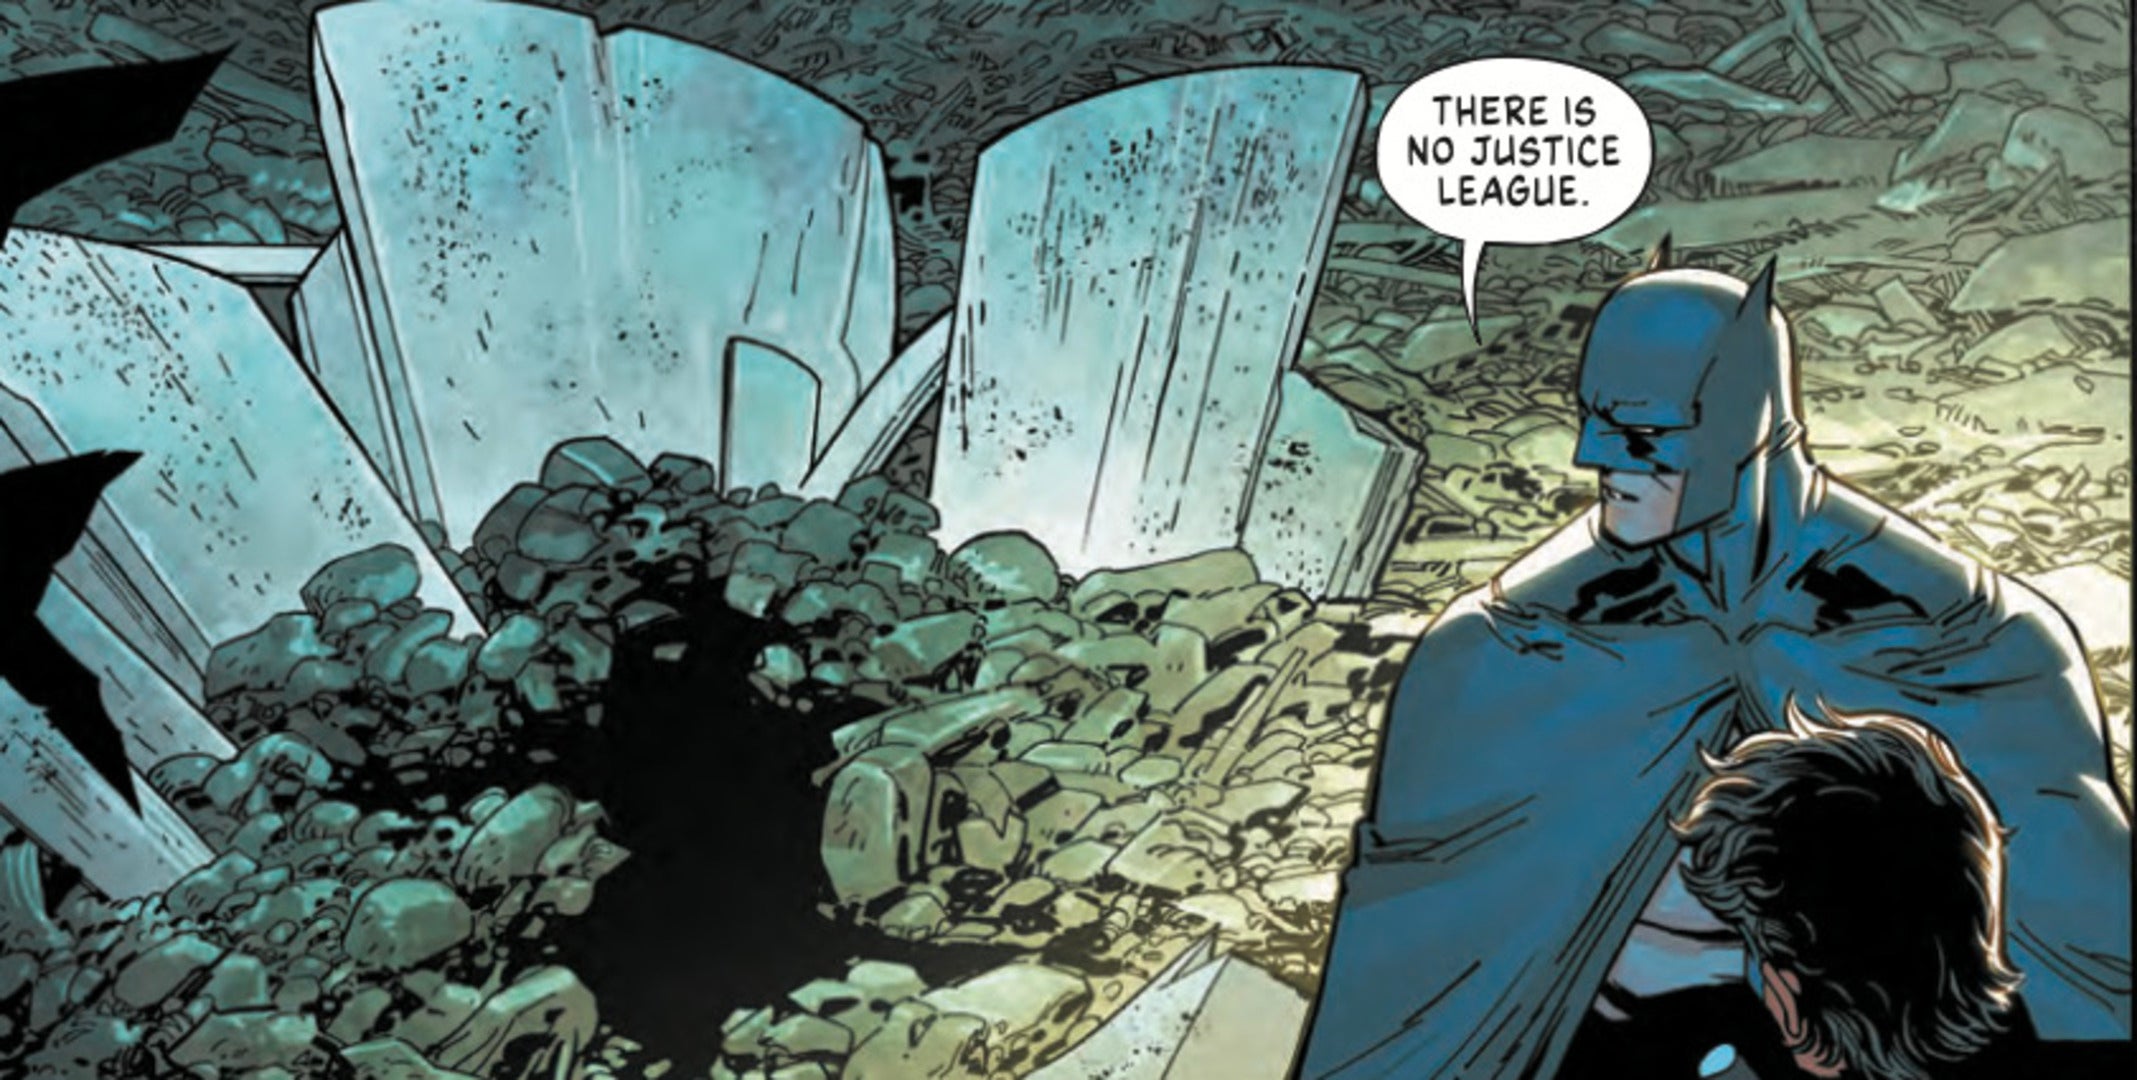 Batman announces Justice League's end